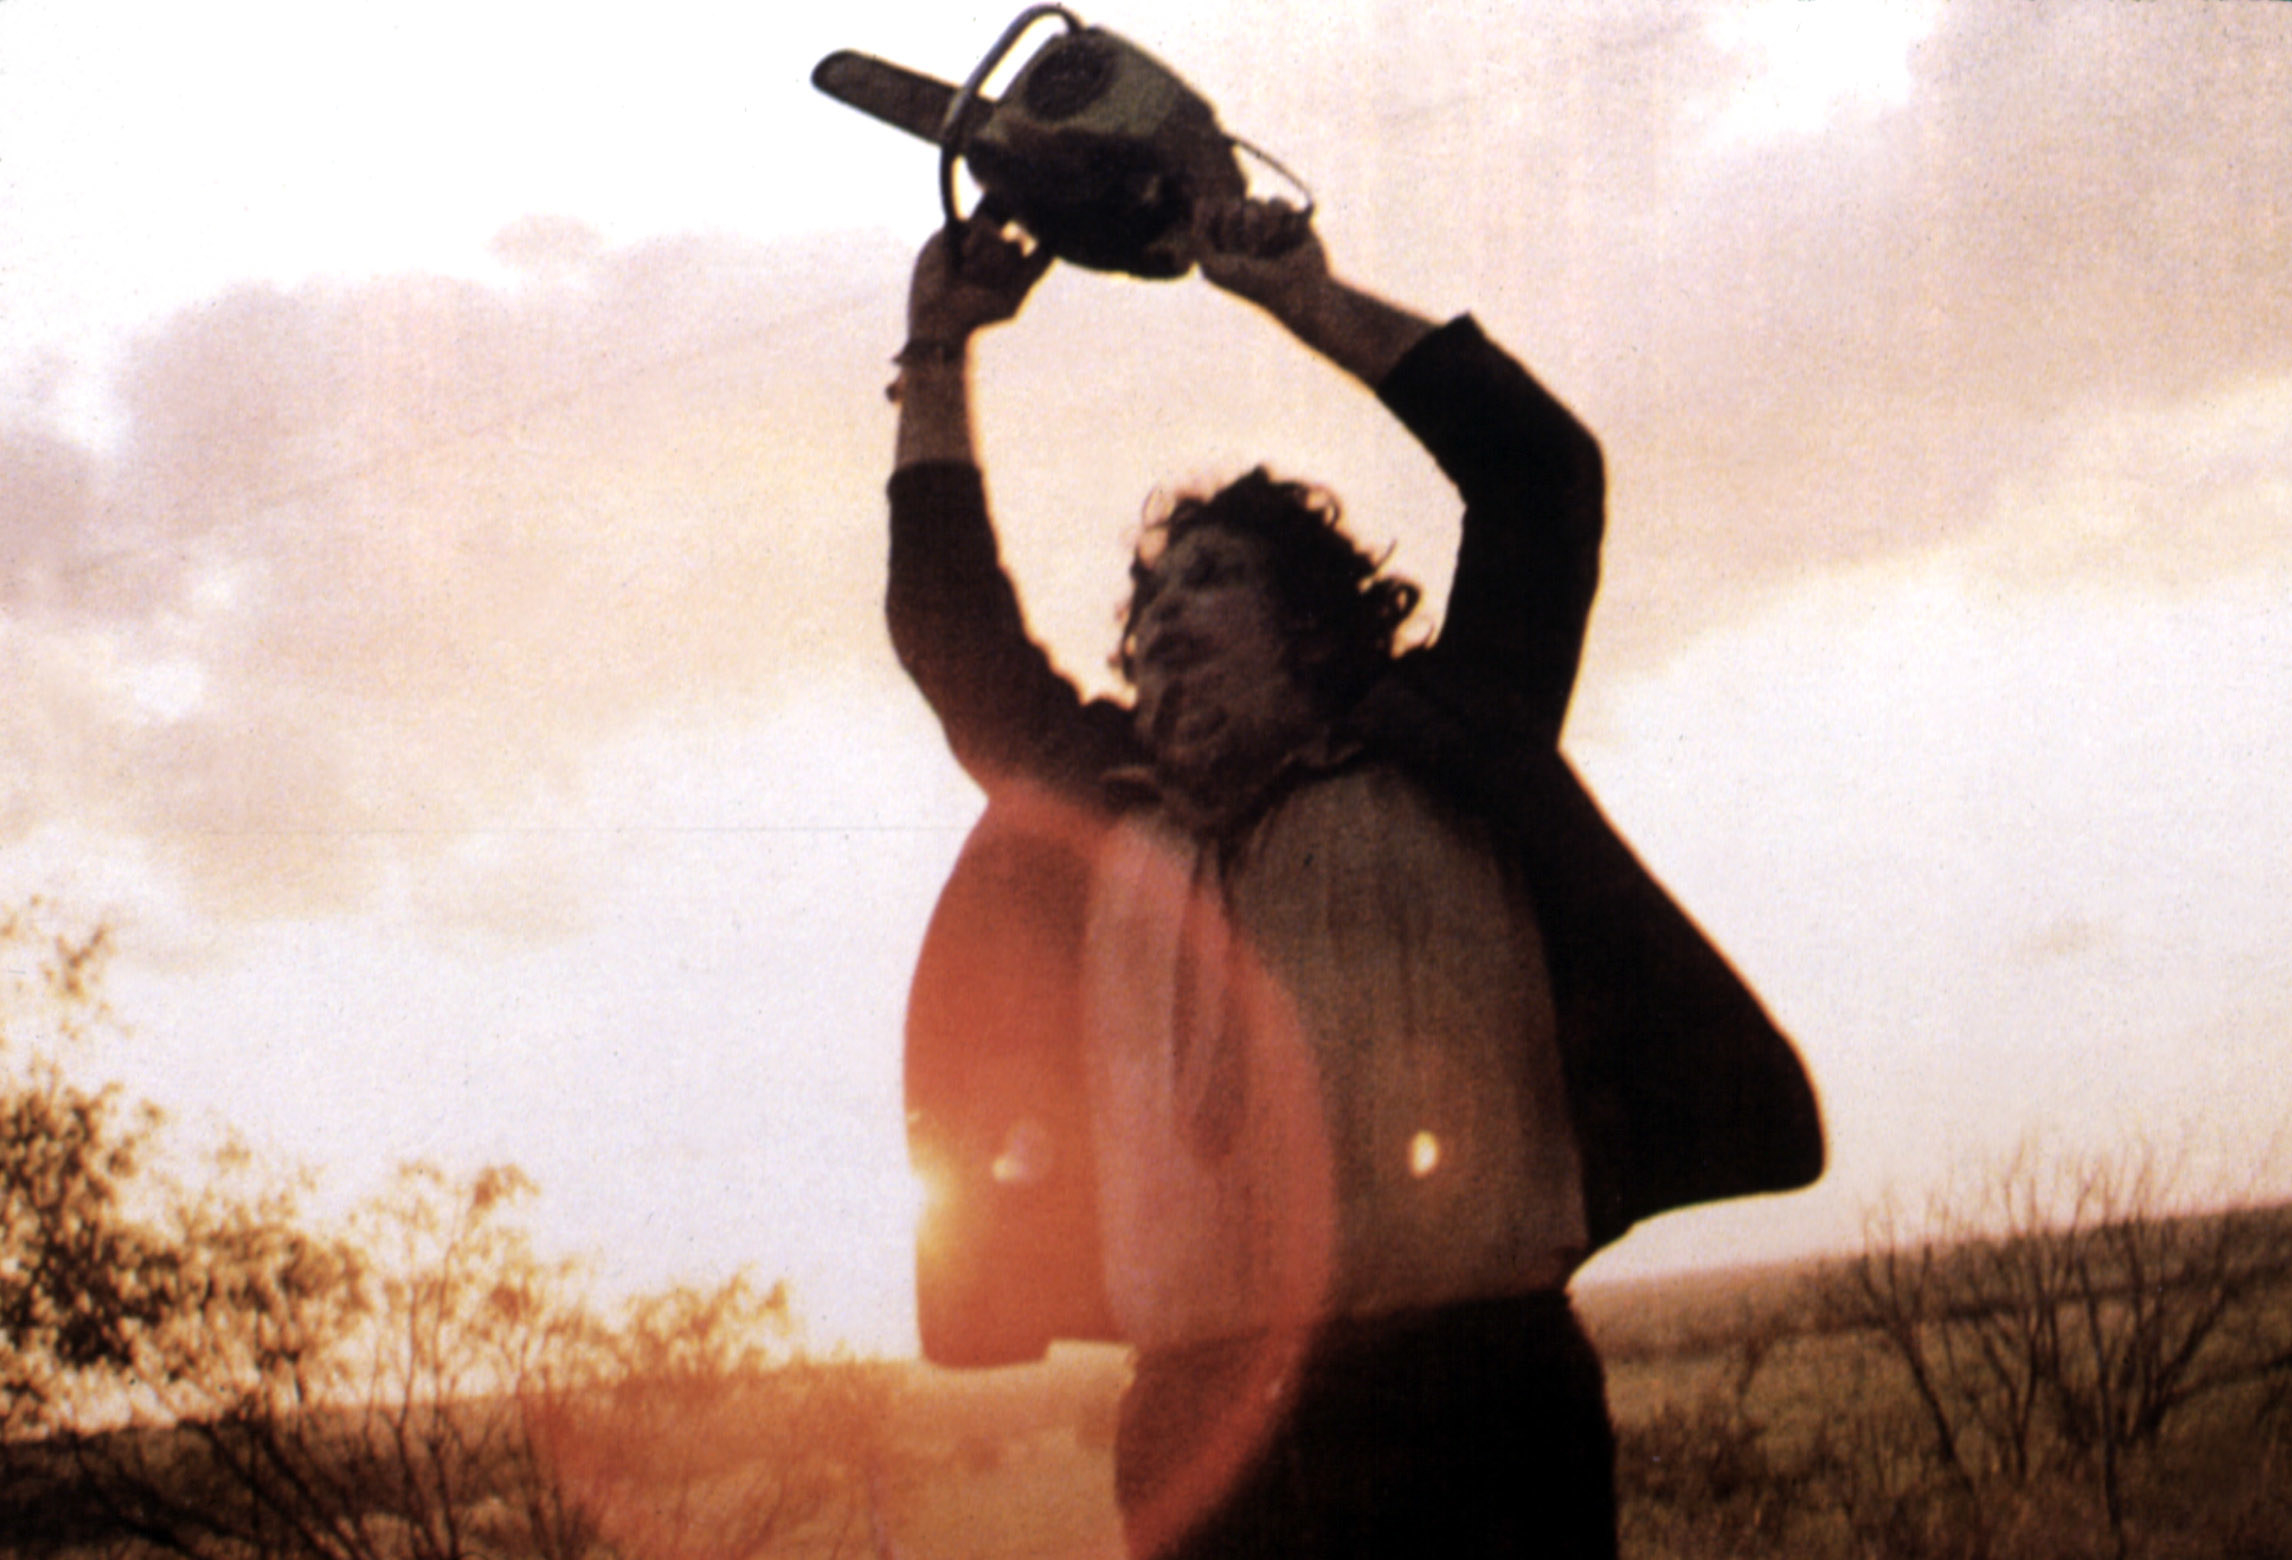 Gunnar Hansen as leatherface wielding a chainsaw